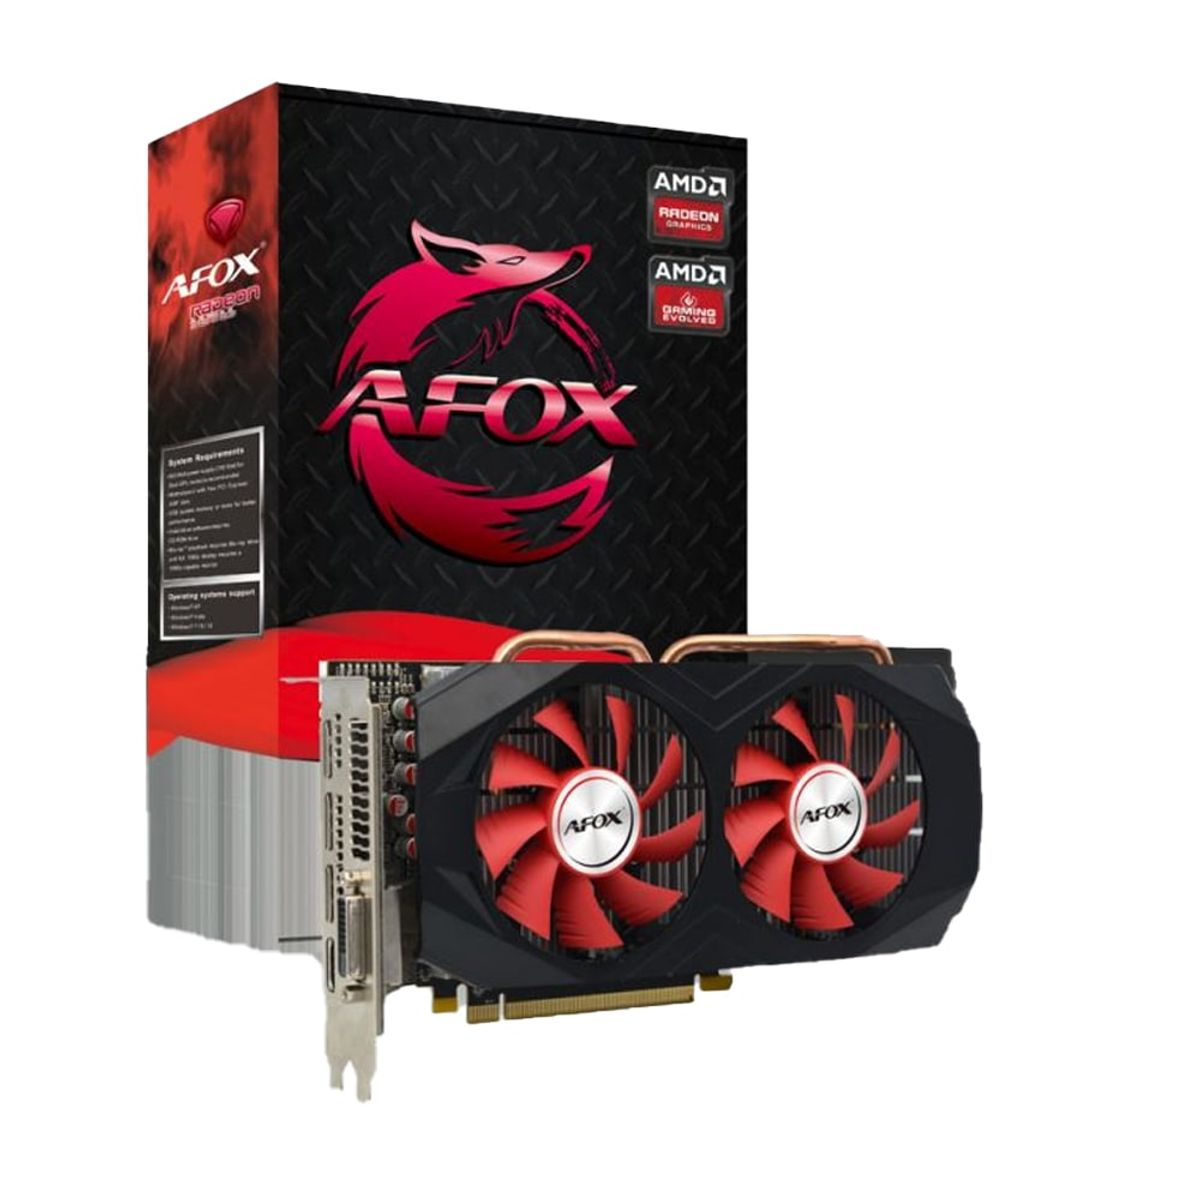 Placa de Vídeo Afox AMD Radeon RX580, 8GB GDDR5, 256 Bits - AFRX580-8192D5H3-V2